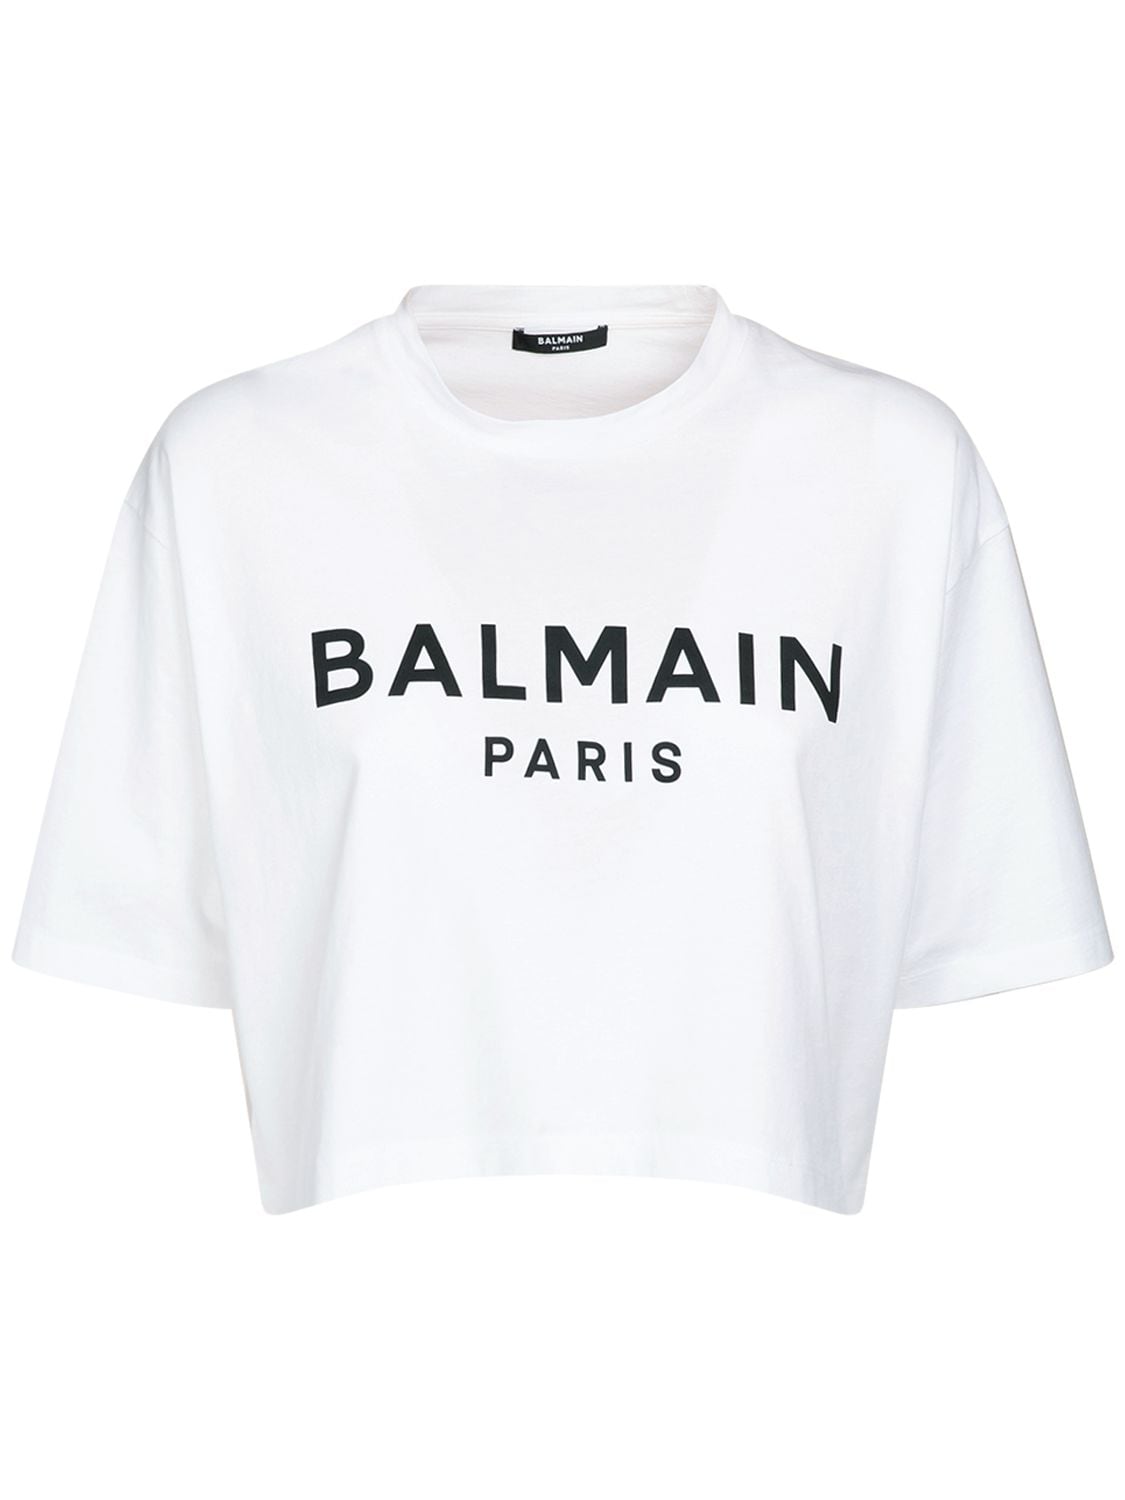 Balmain - Logo print cropped cotton jersey t-shirt - White/Black ...